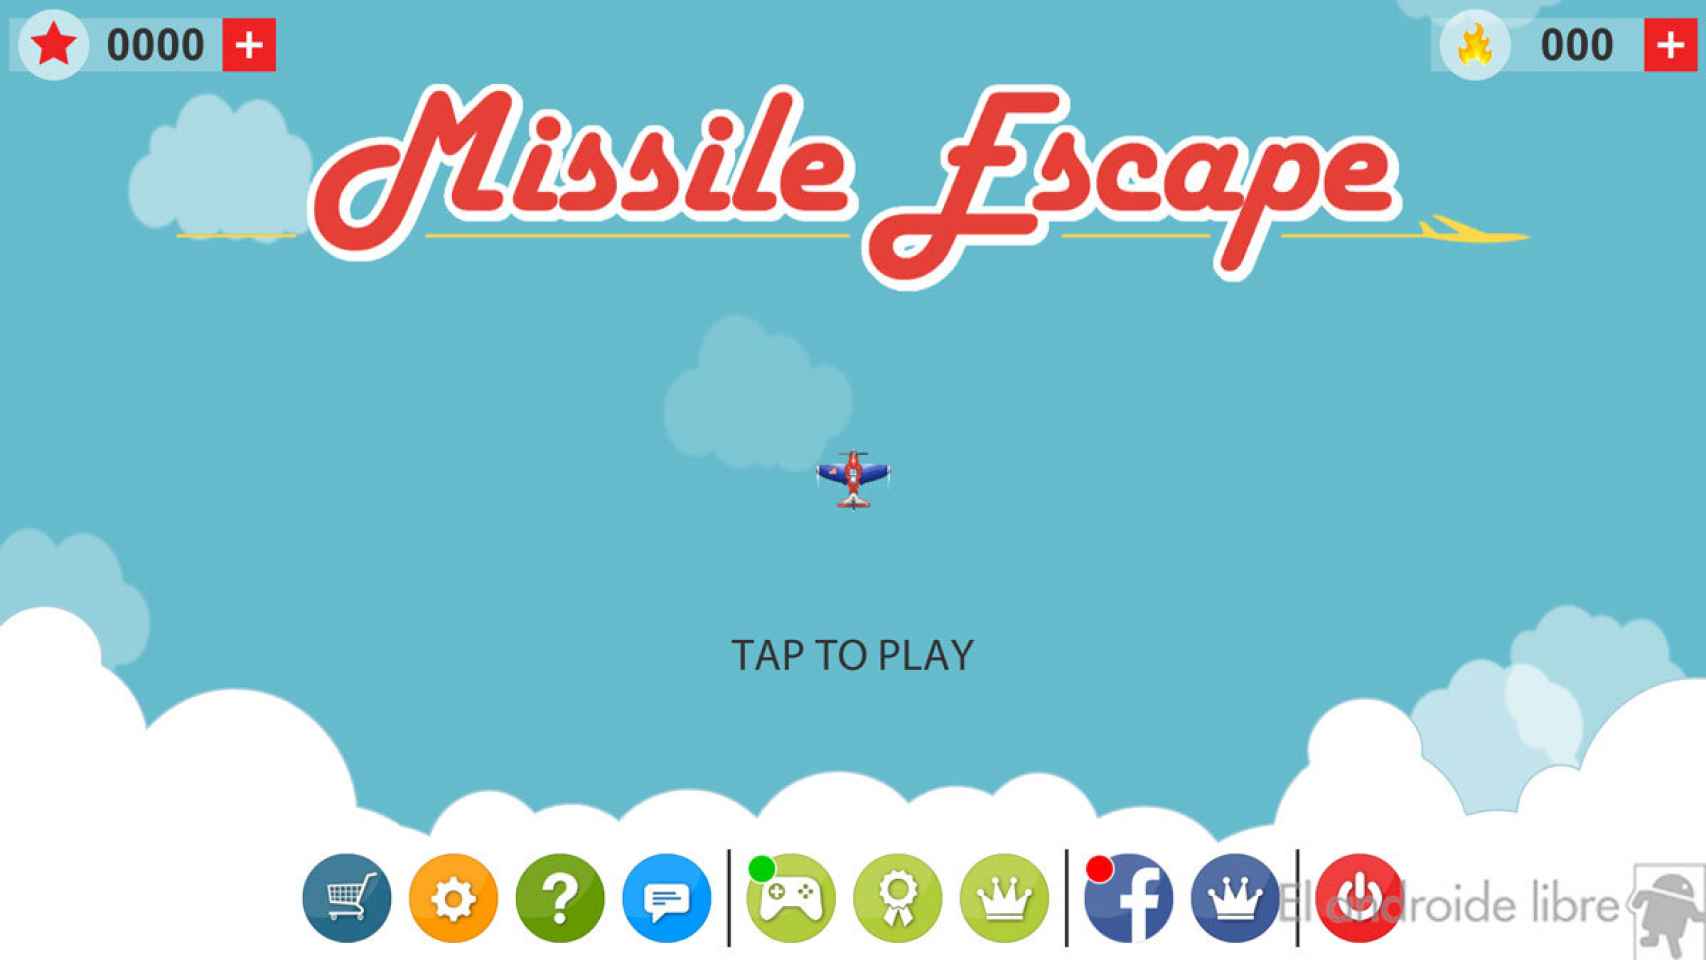 Esquiva misiles con tu avión en el juego Missile Escape